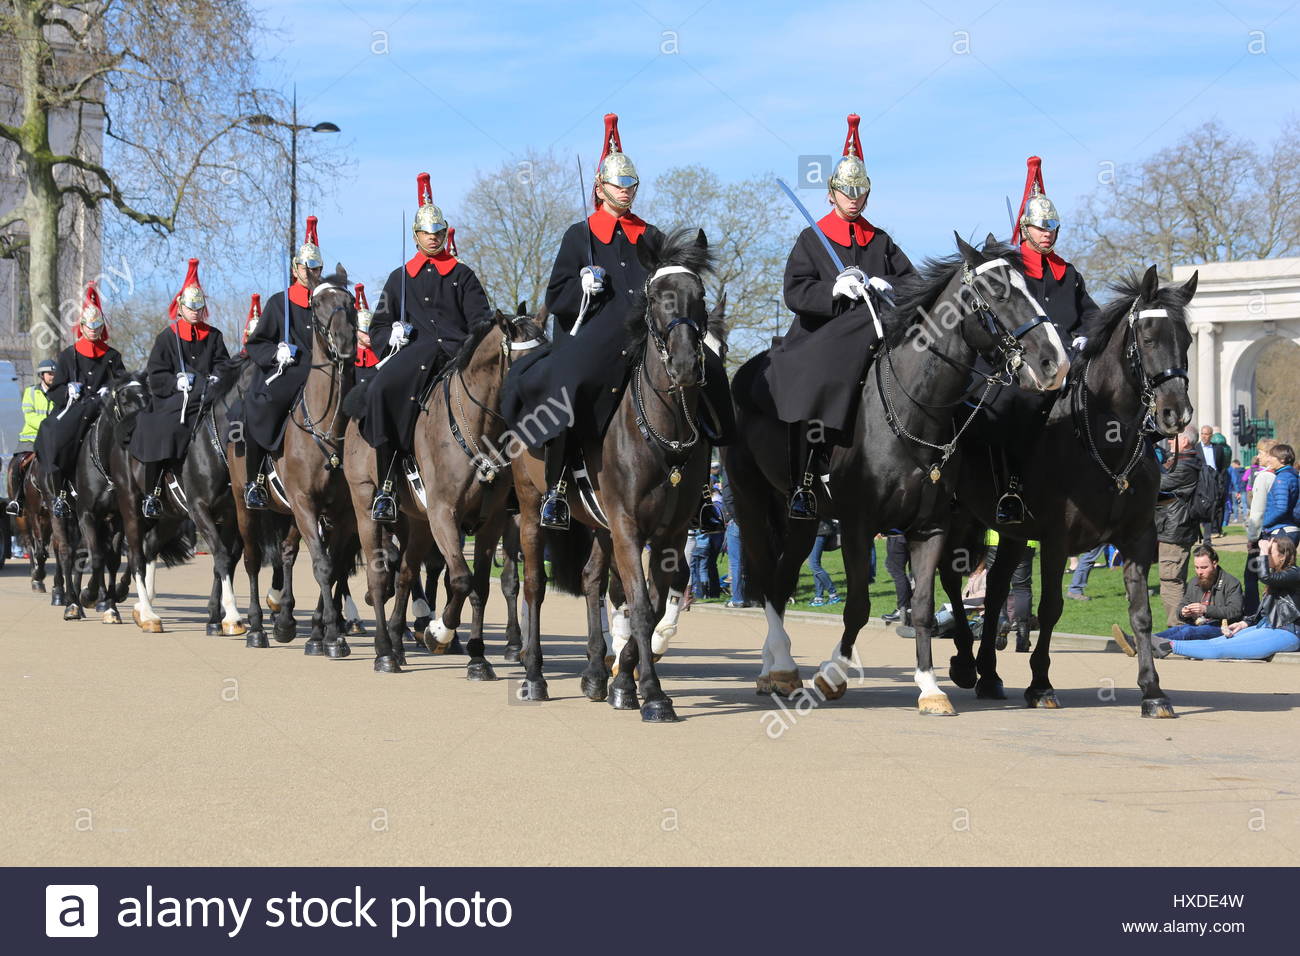 La Garde royale à cheval se déplaçant dans un aprk au centre de Londres le 25 mars 2017 Banque D'Images